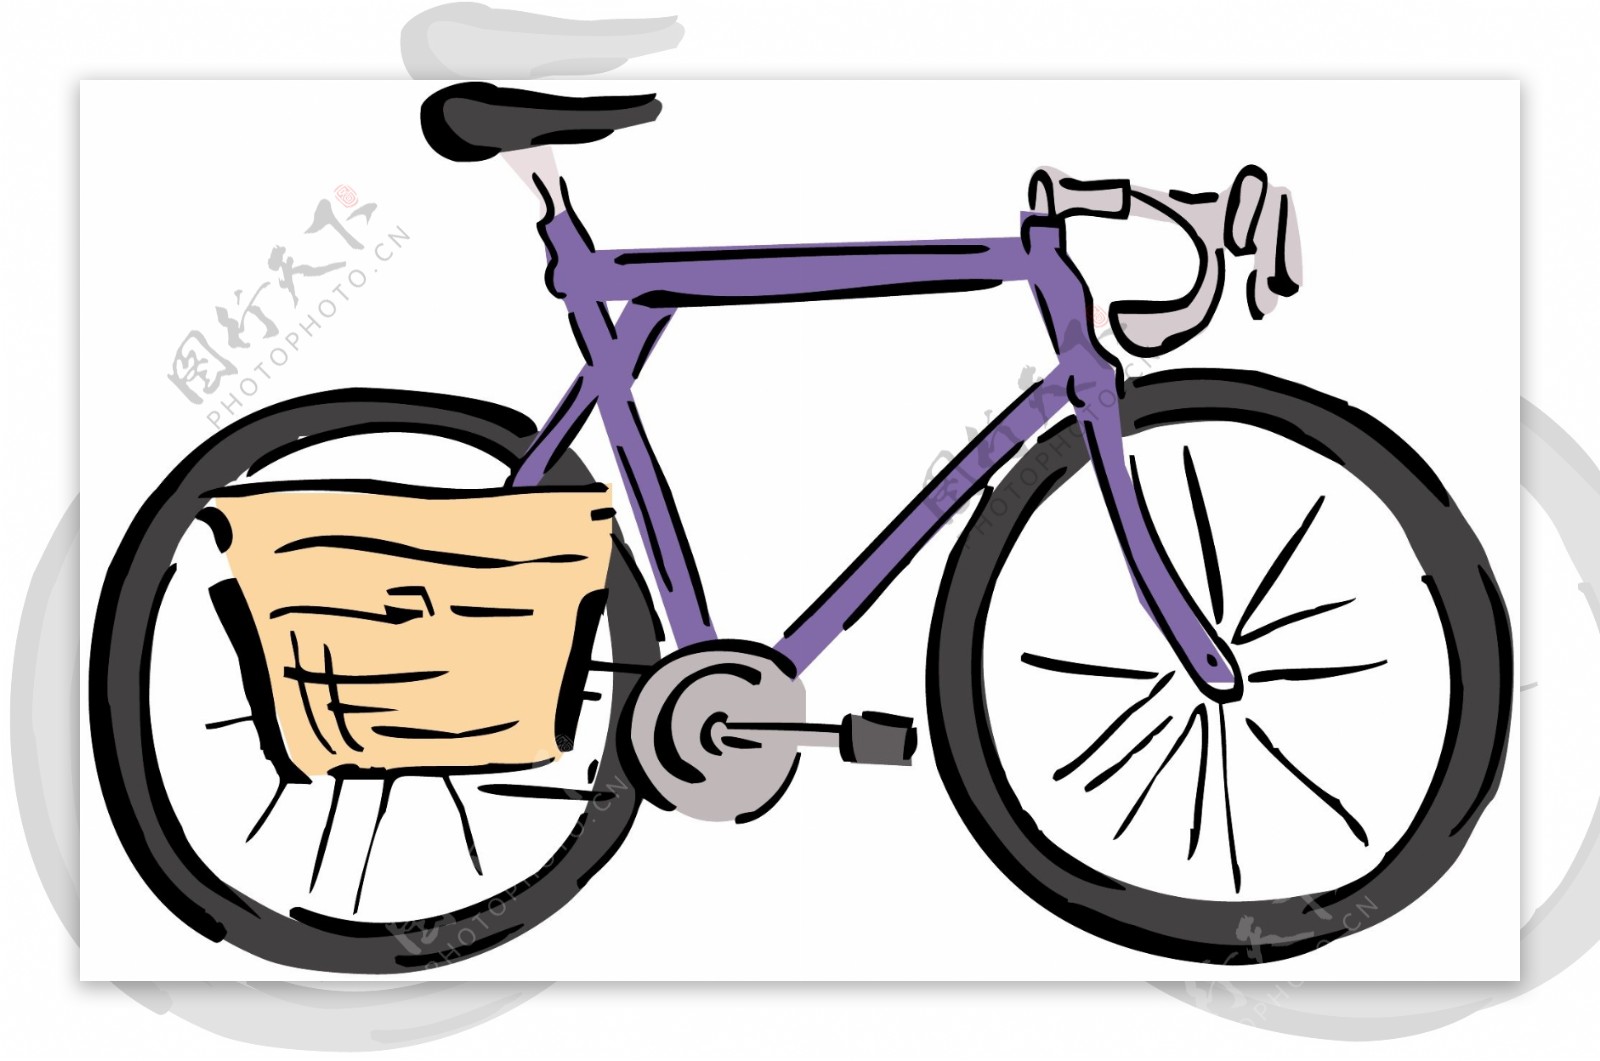 自行车交通工具矢量素材EPS格式0061